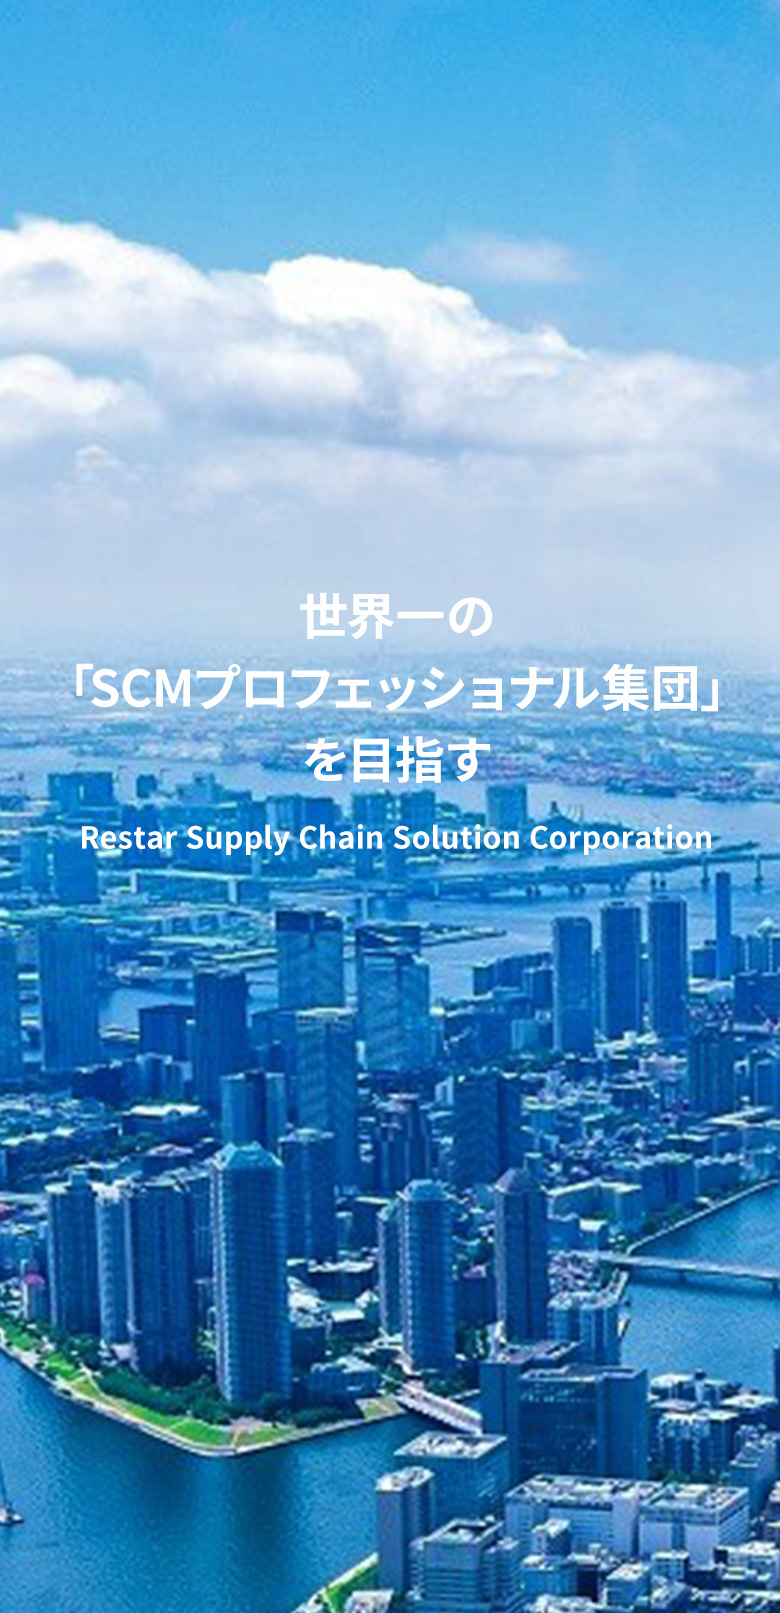 「世界一のSCMプロフェッショナル集団」を目指す Restar Supply Chain Solution Corporation